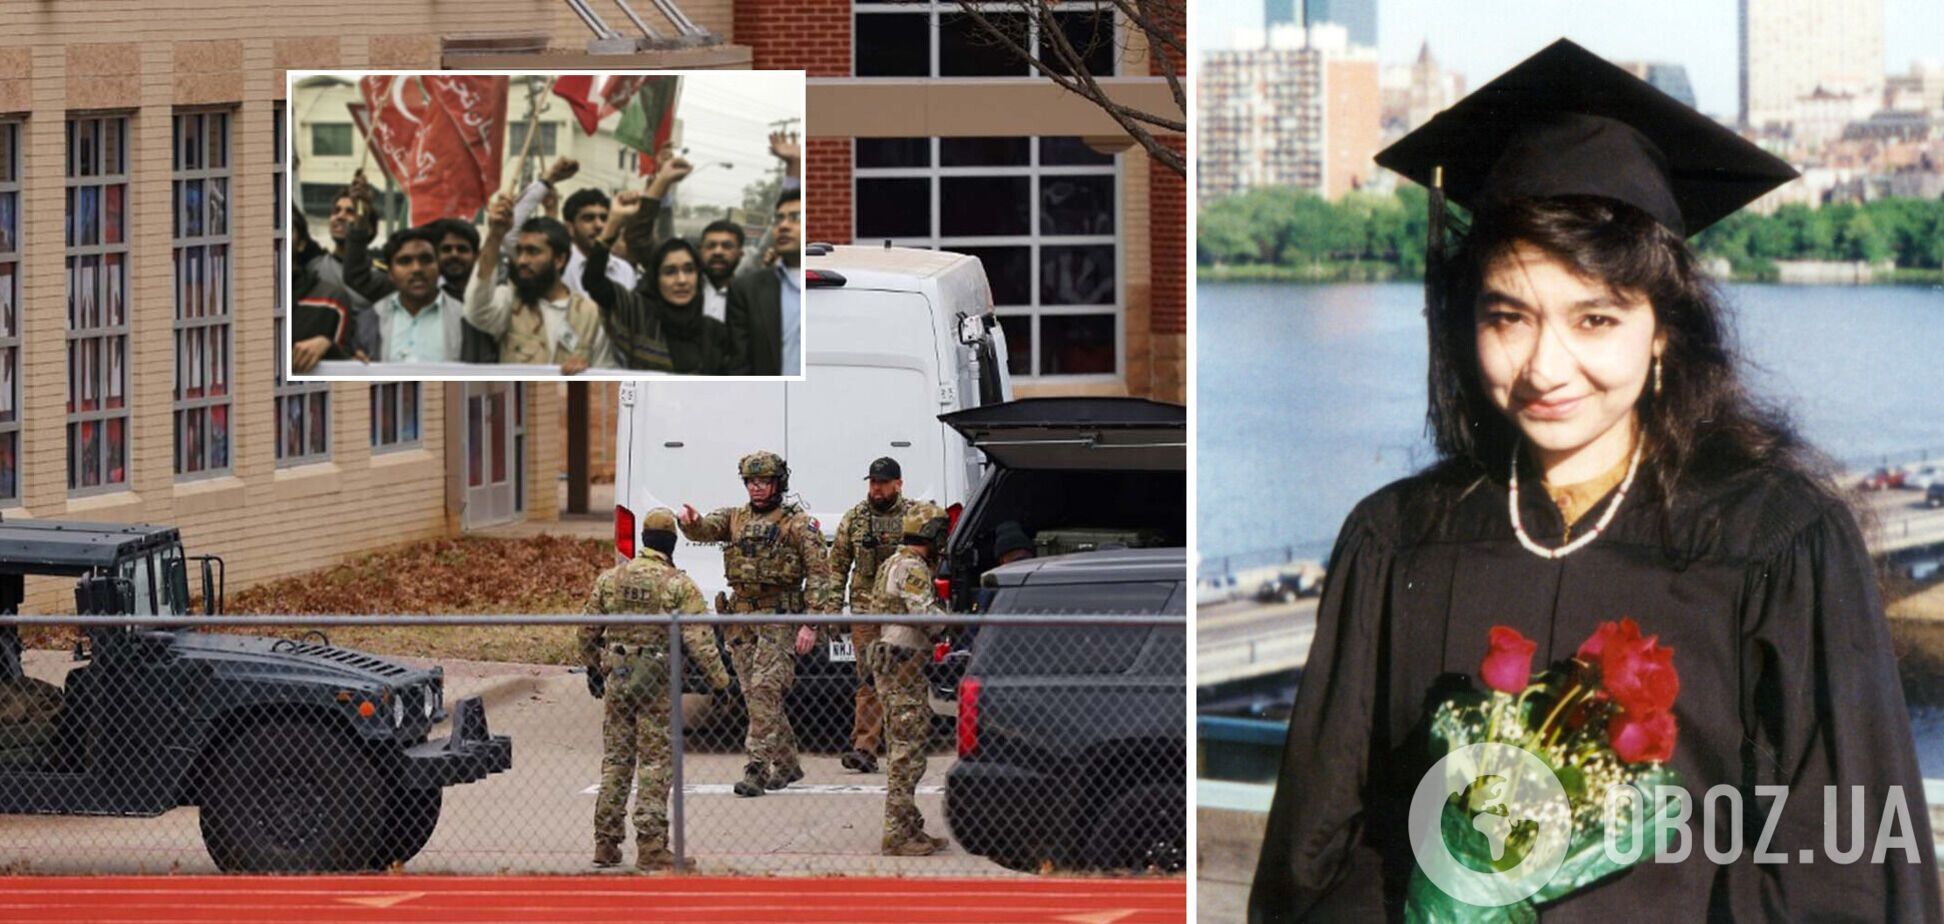 'Леди Аль-Каида': что известно о пакистанке, из-за которой мужчина захватил заложников в Техасе